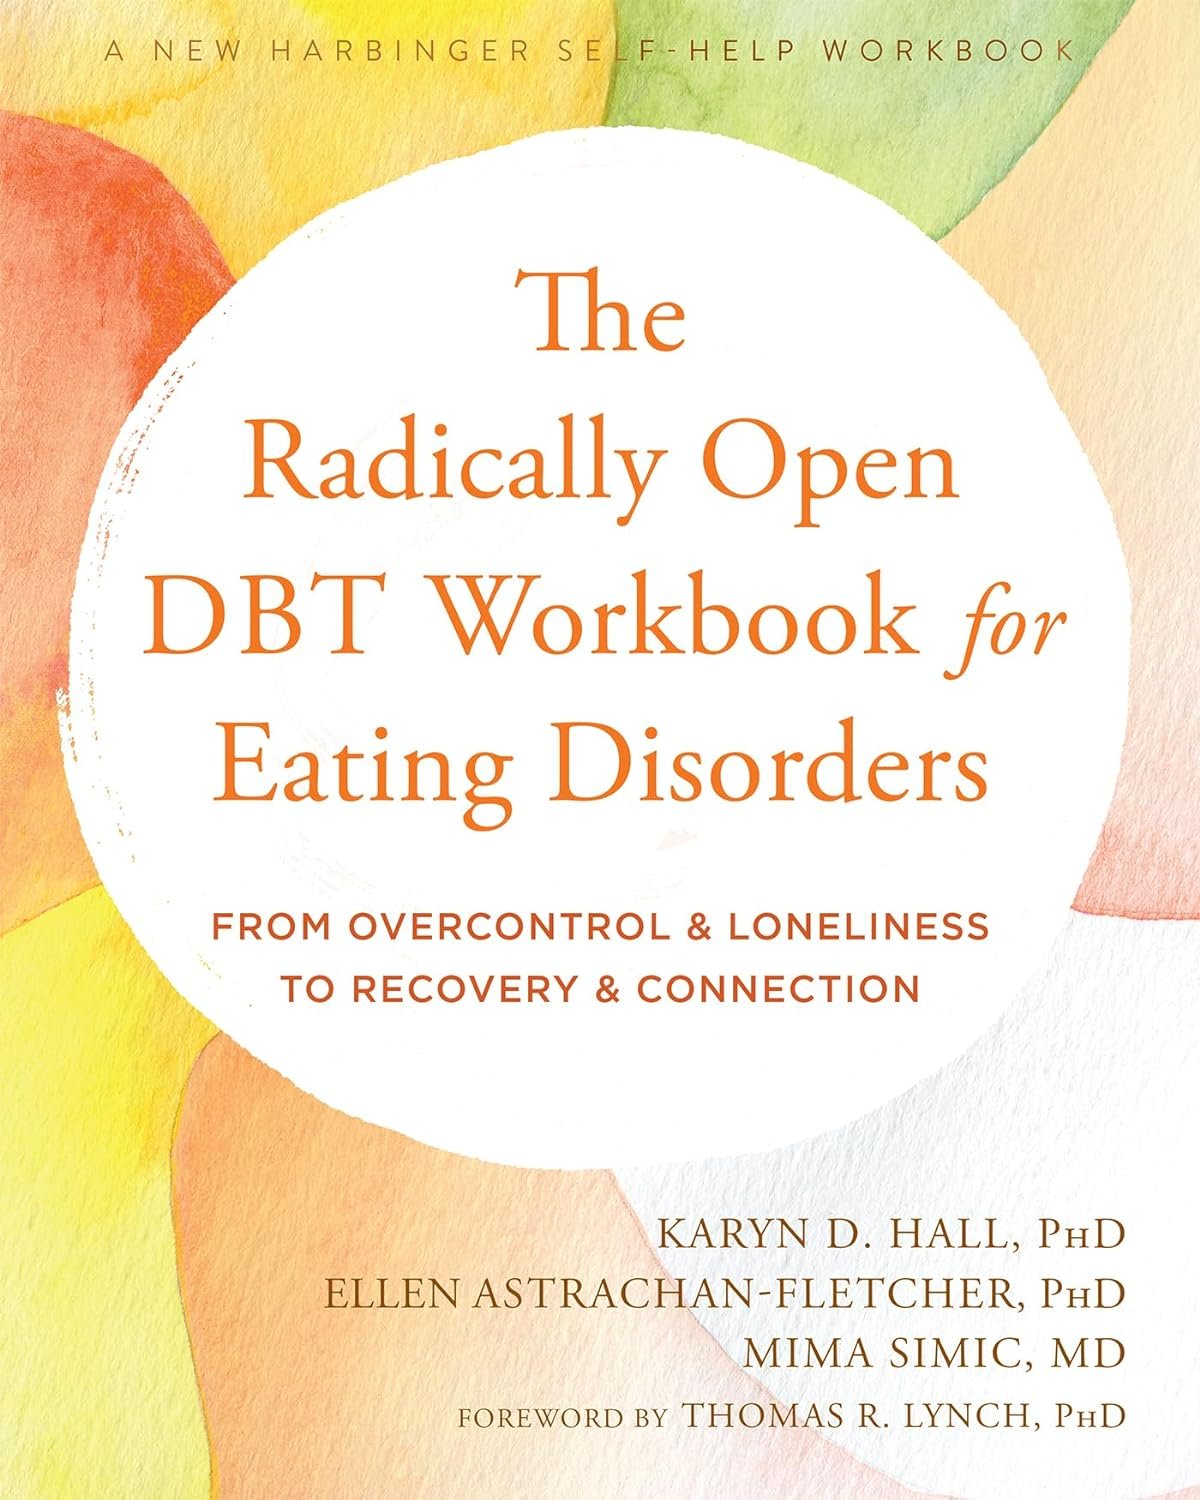 The radically open DBT workbook